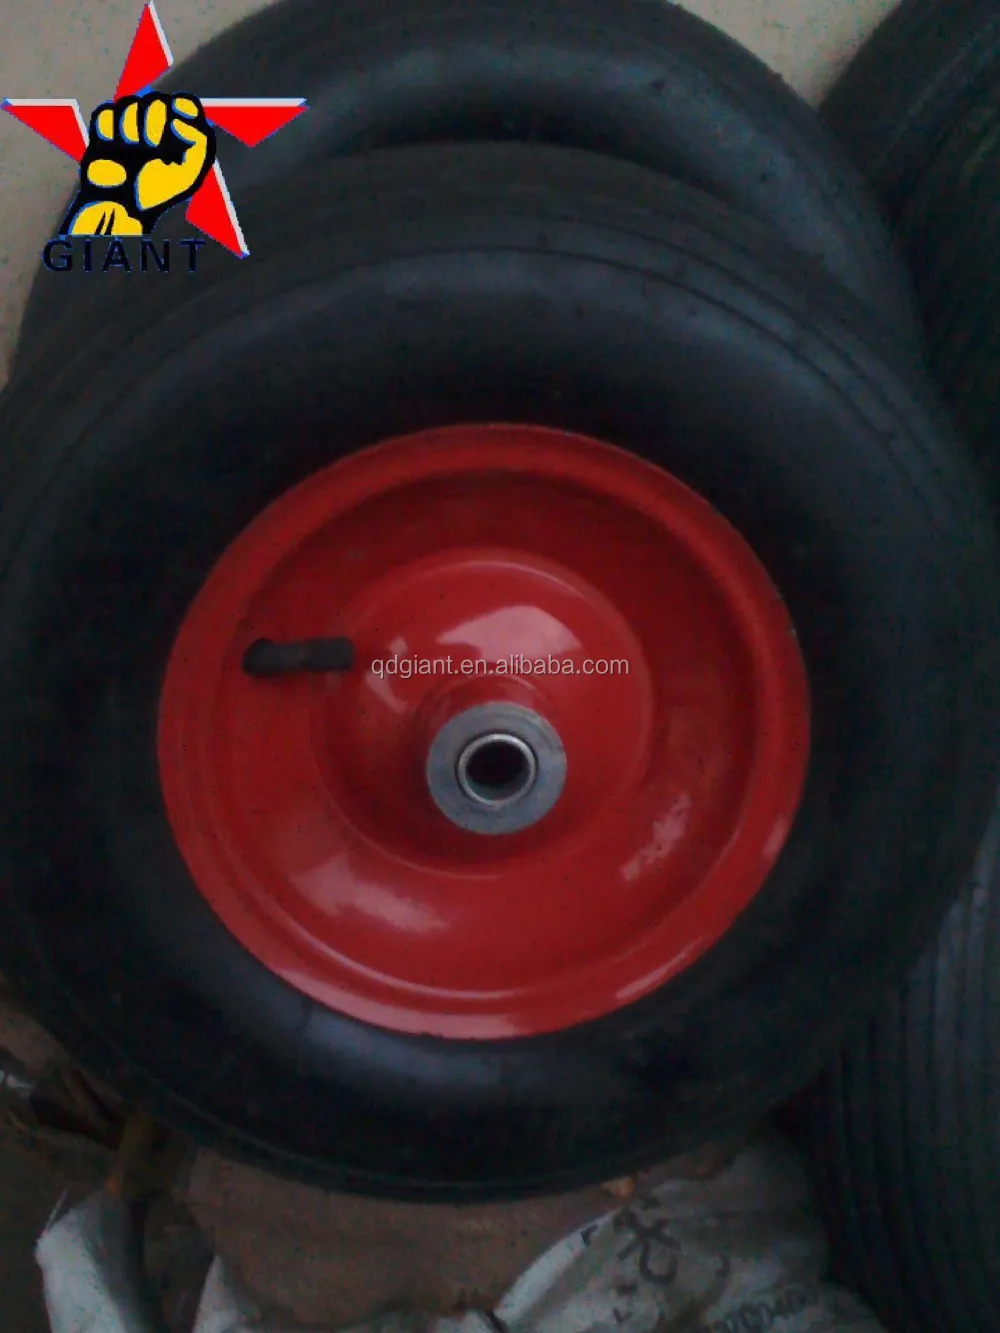 steel rim pneumatic wheel 3.50-8 for wheelbarrow